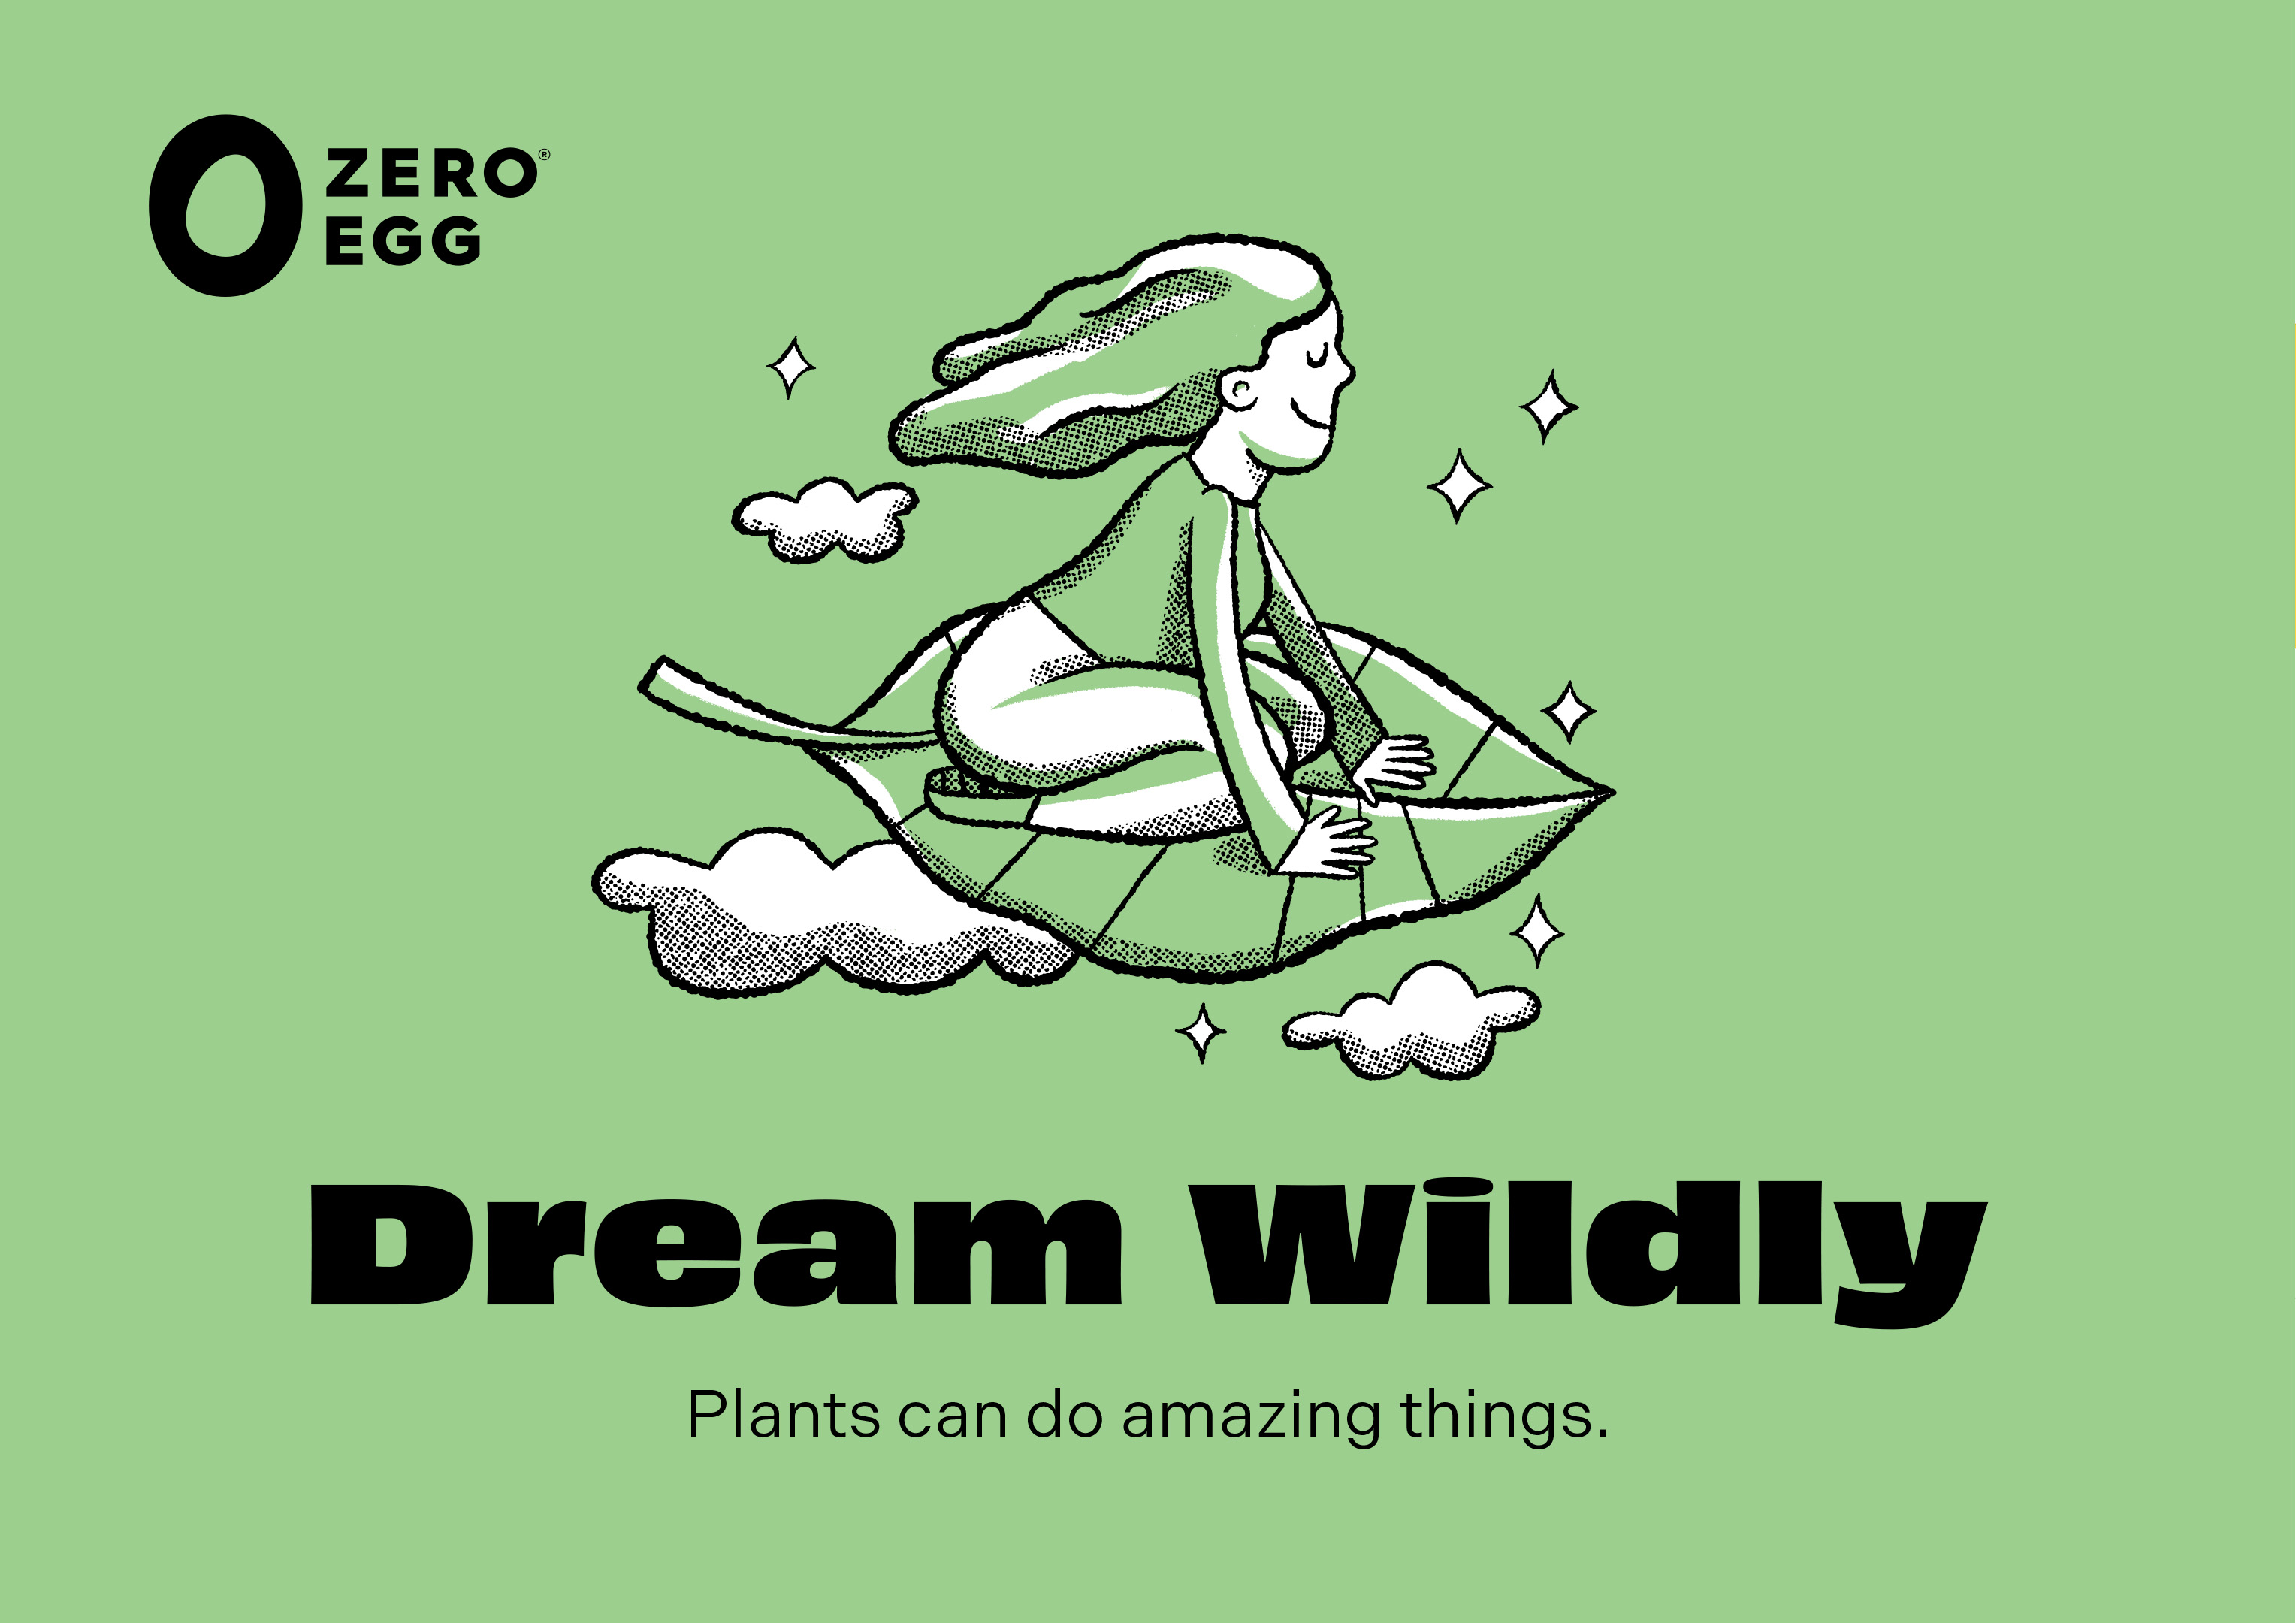 Zero Egg dream wildly